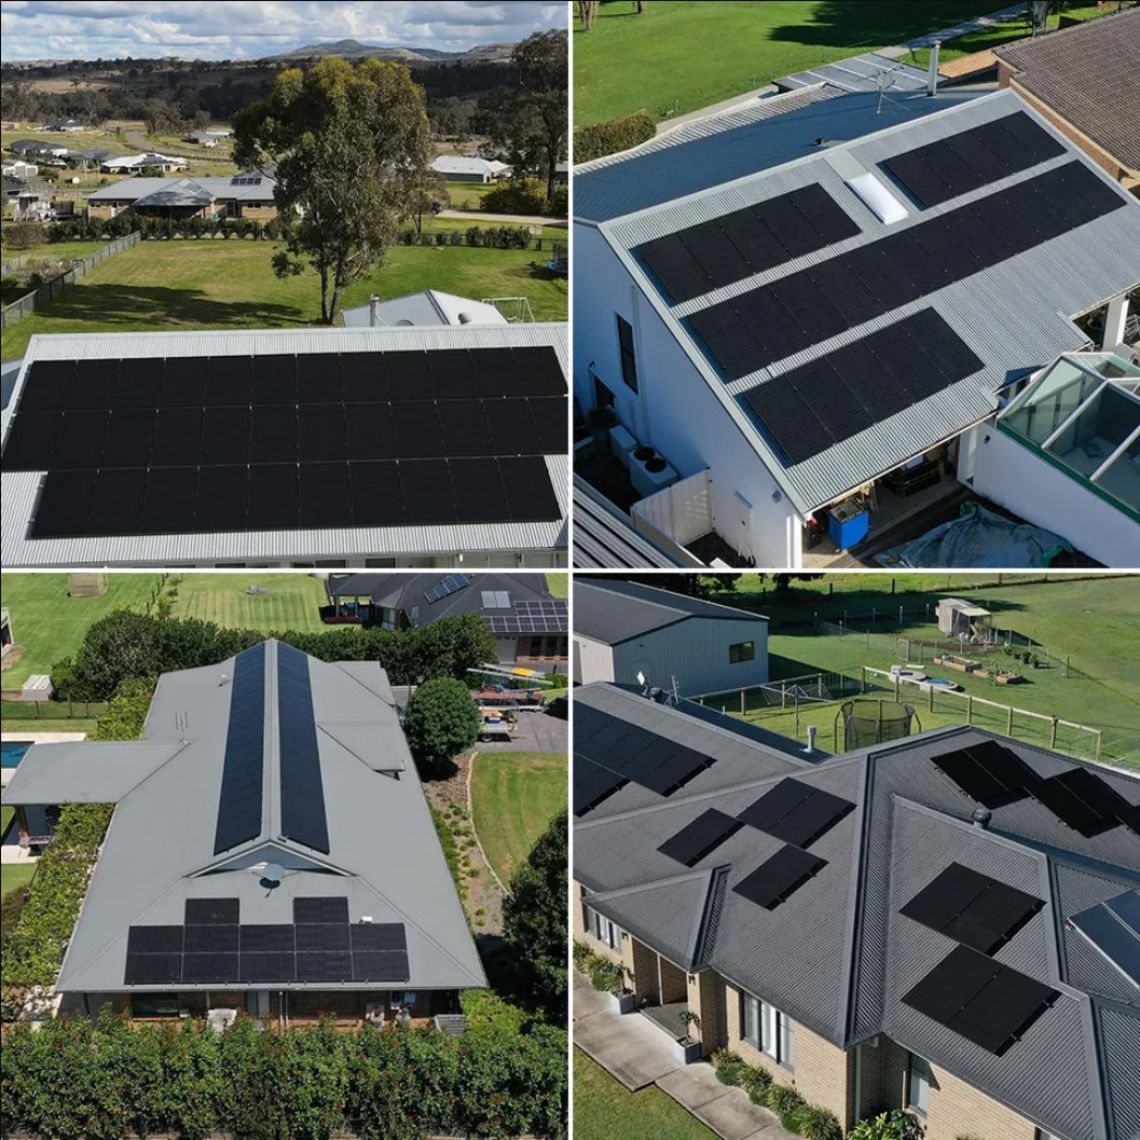 Paneau photovoltaic (PV), Panneau solaire, modules solaire, arrays solaire, modules photovoltaic